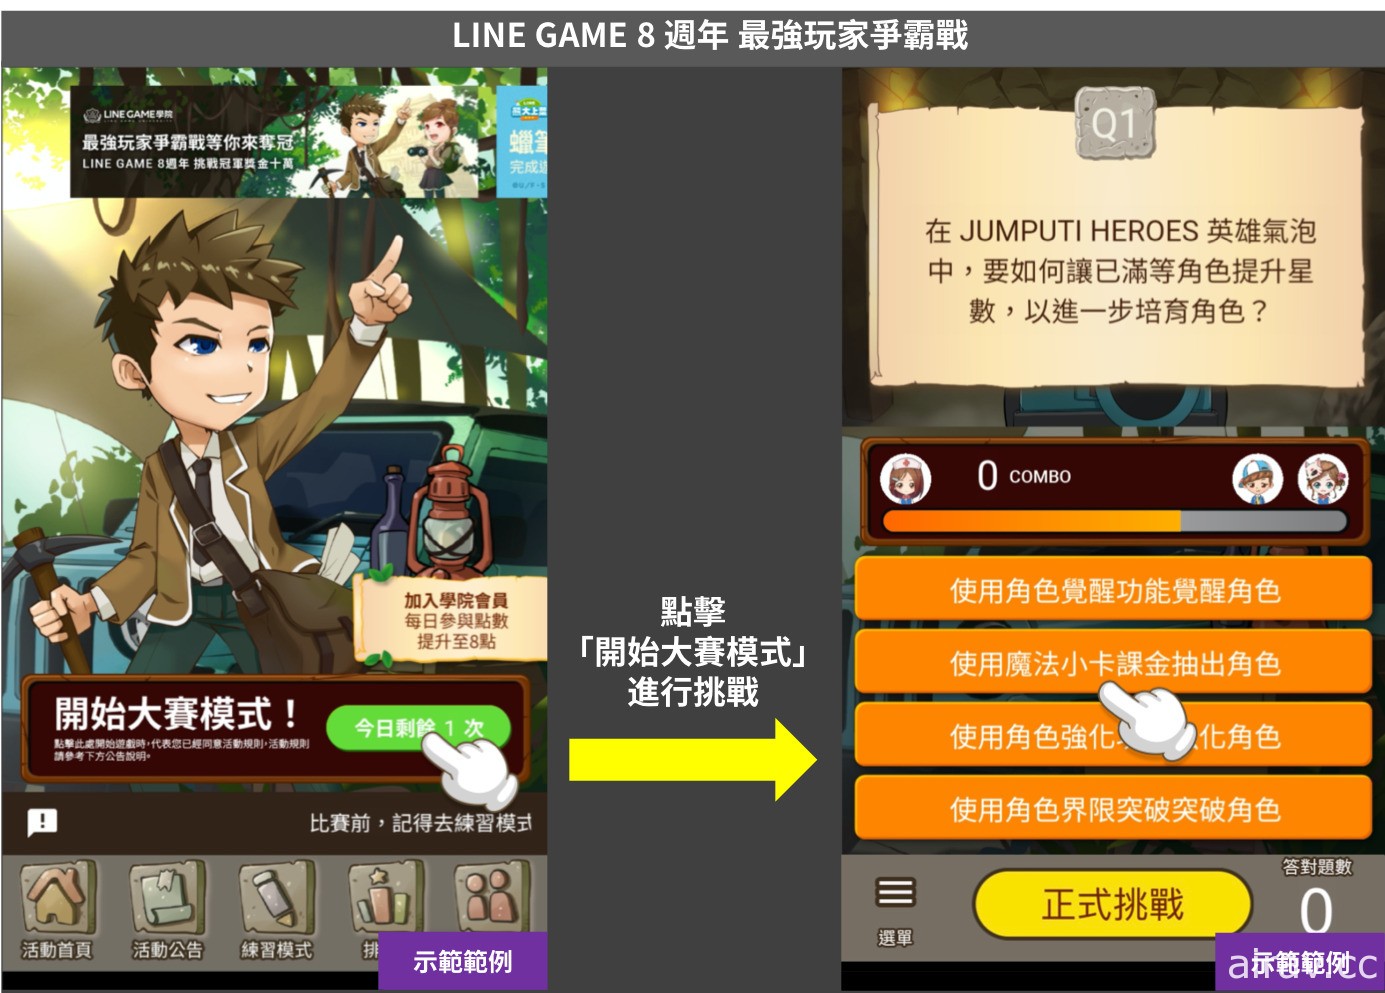 歡慶 LINE GAME 8 週年 最強玩家爭霸戰登場 首次祭出冠軍獎金新台幣十萬元